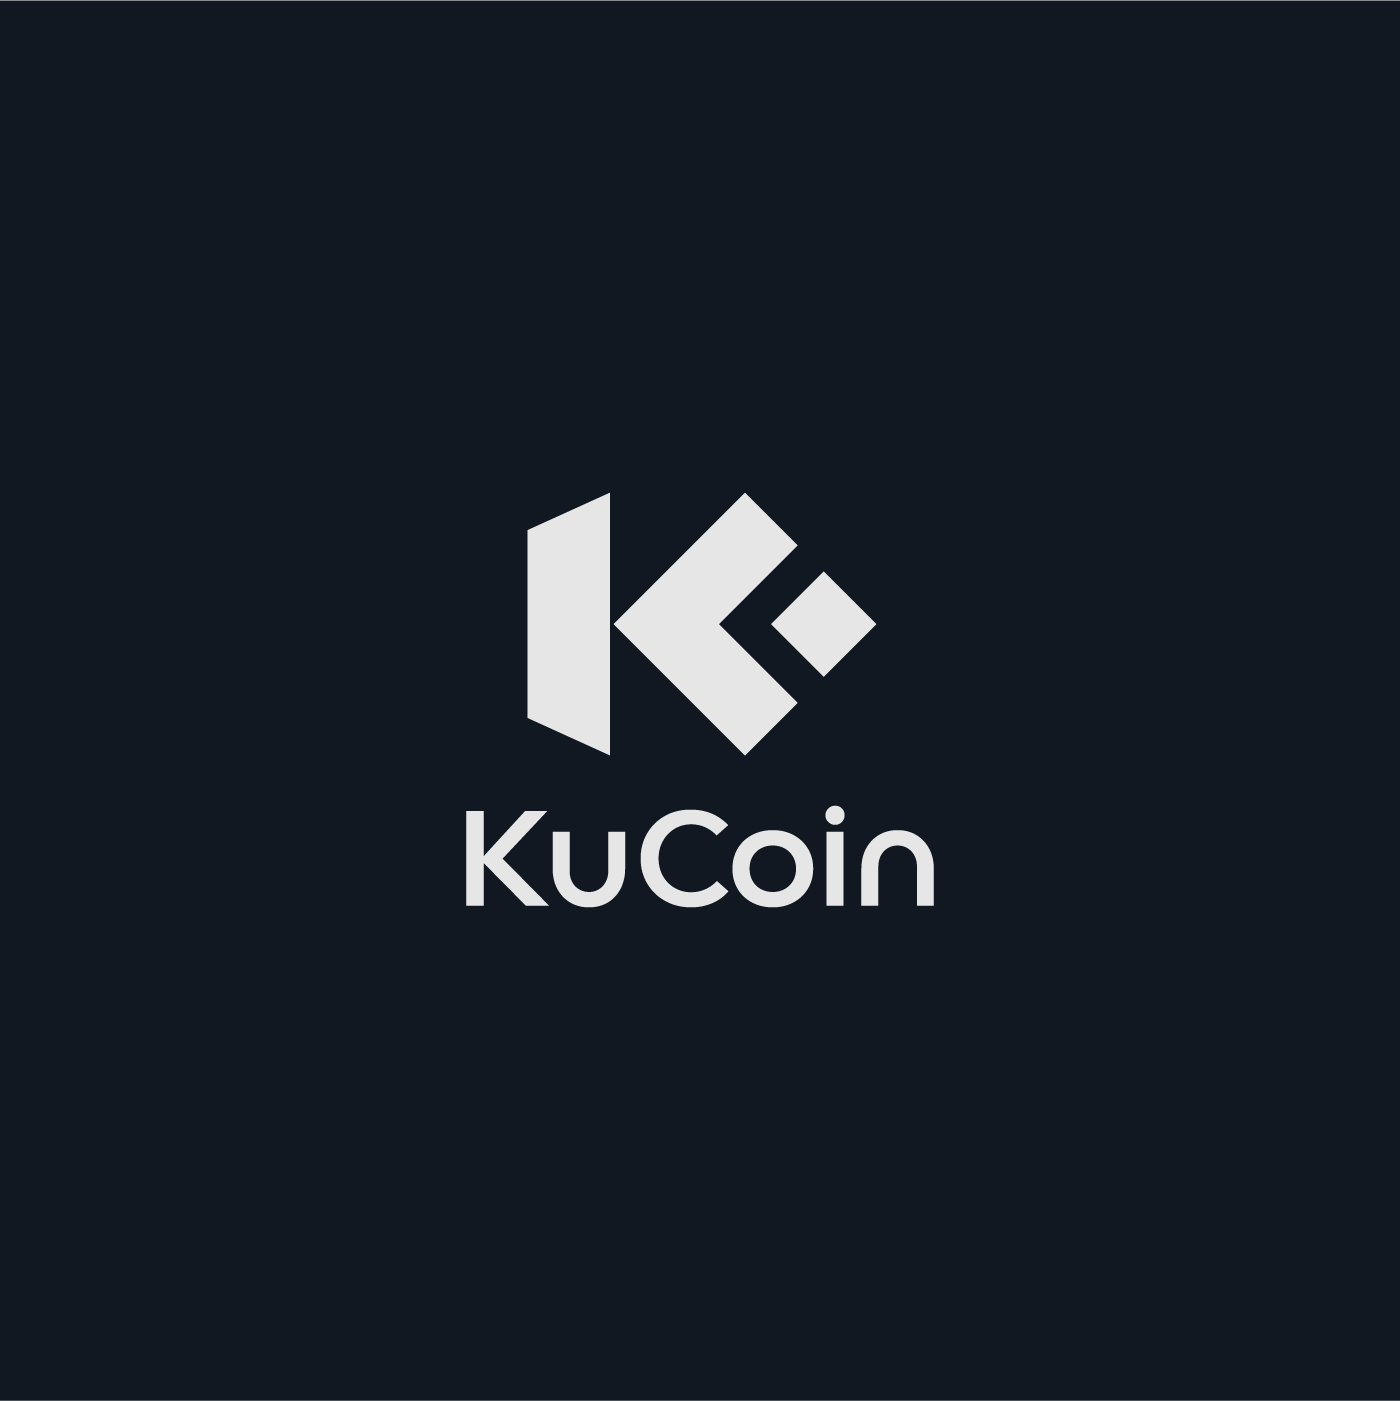 KuCoin - Logo Redesign Proposal